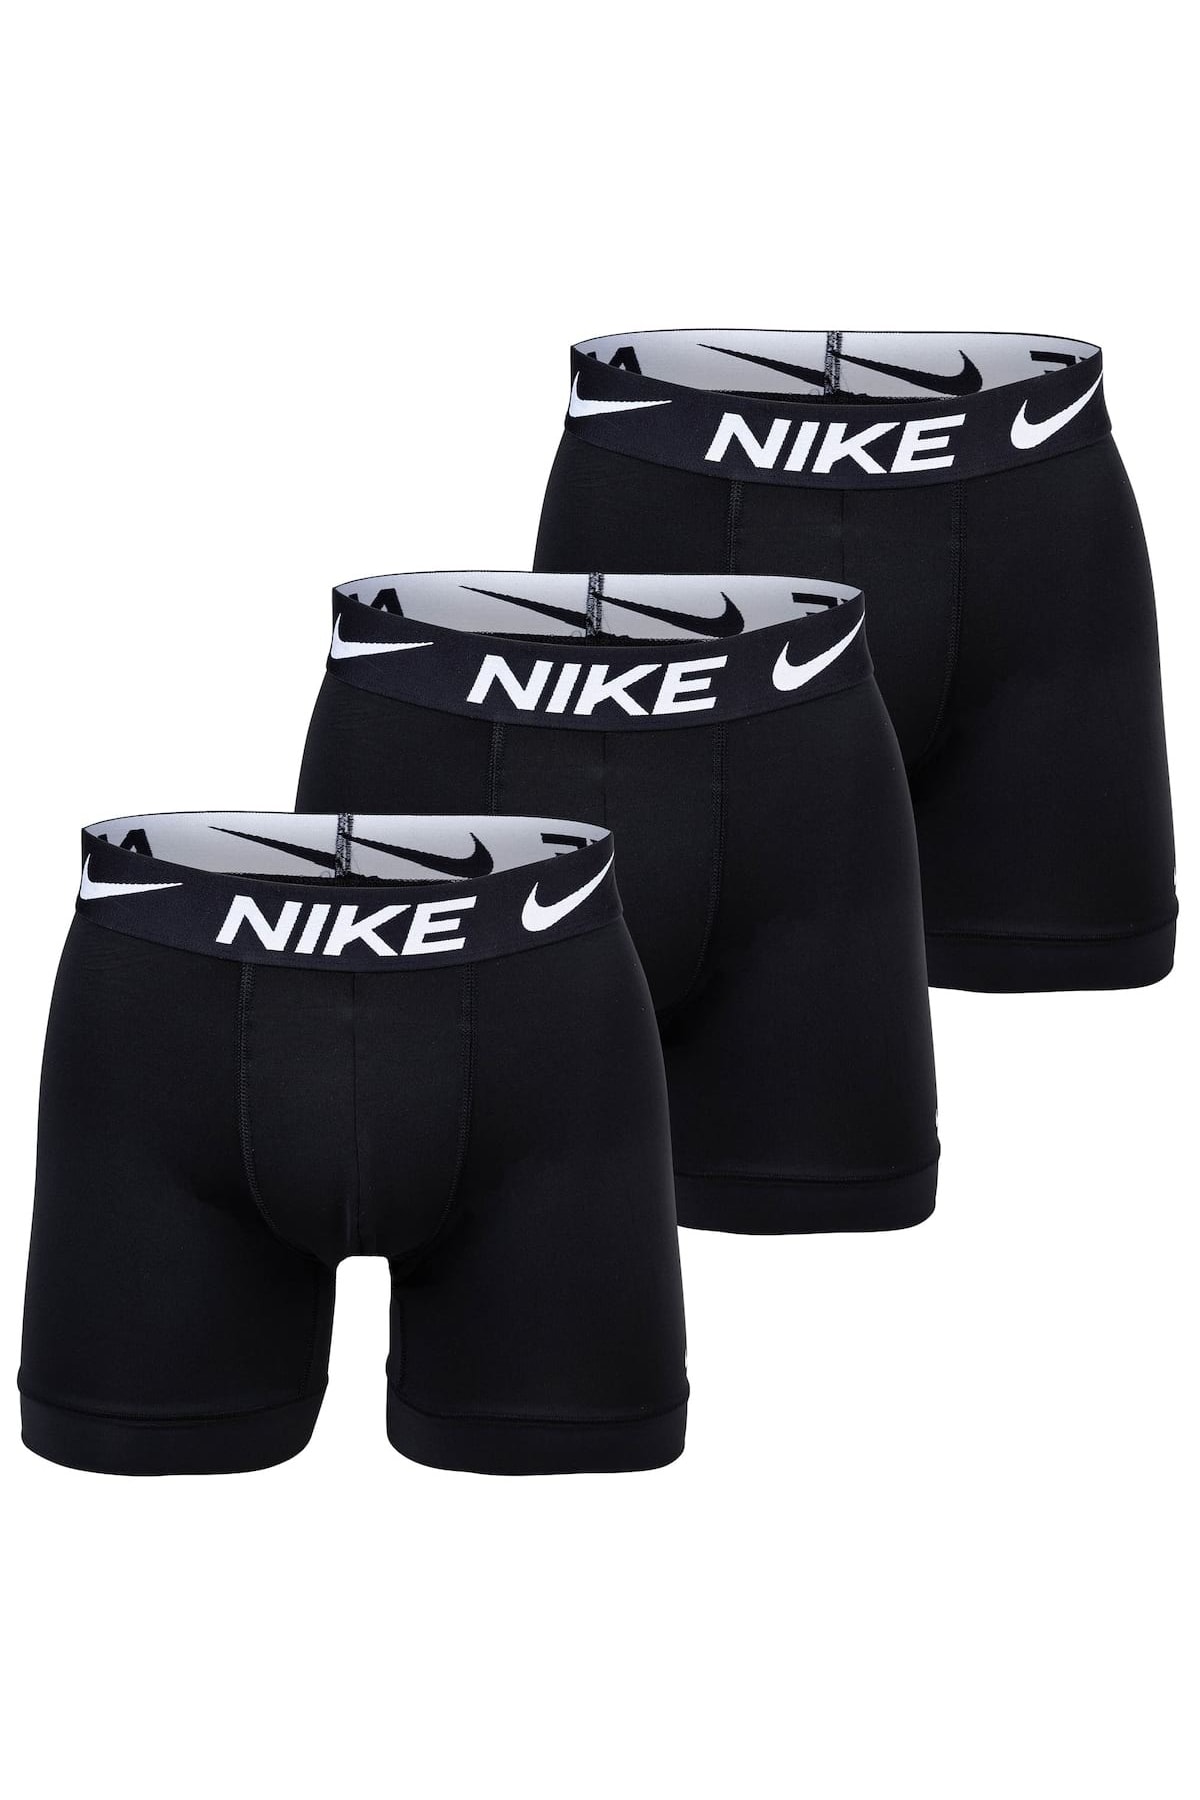 Nike Boxershorts Schwarz Unifarben